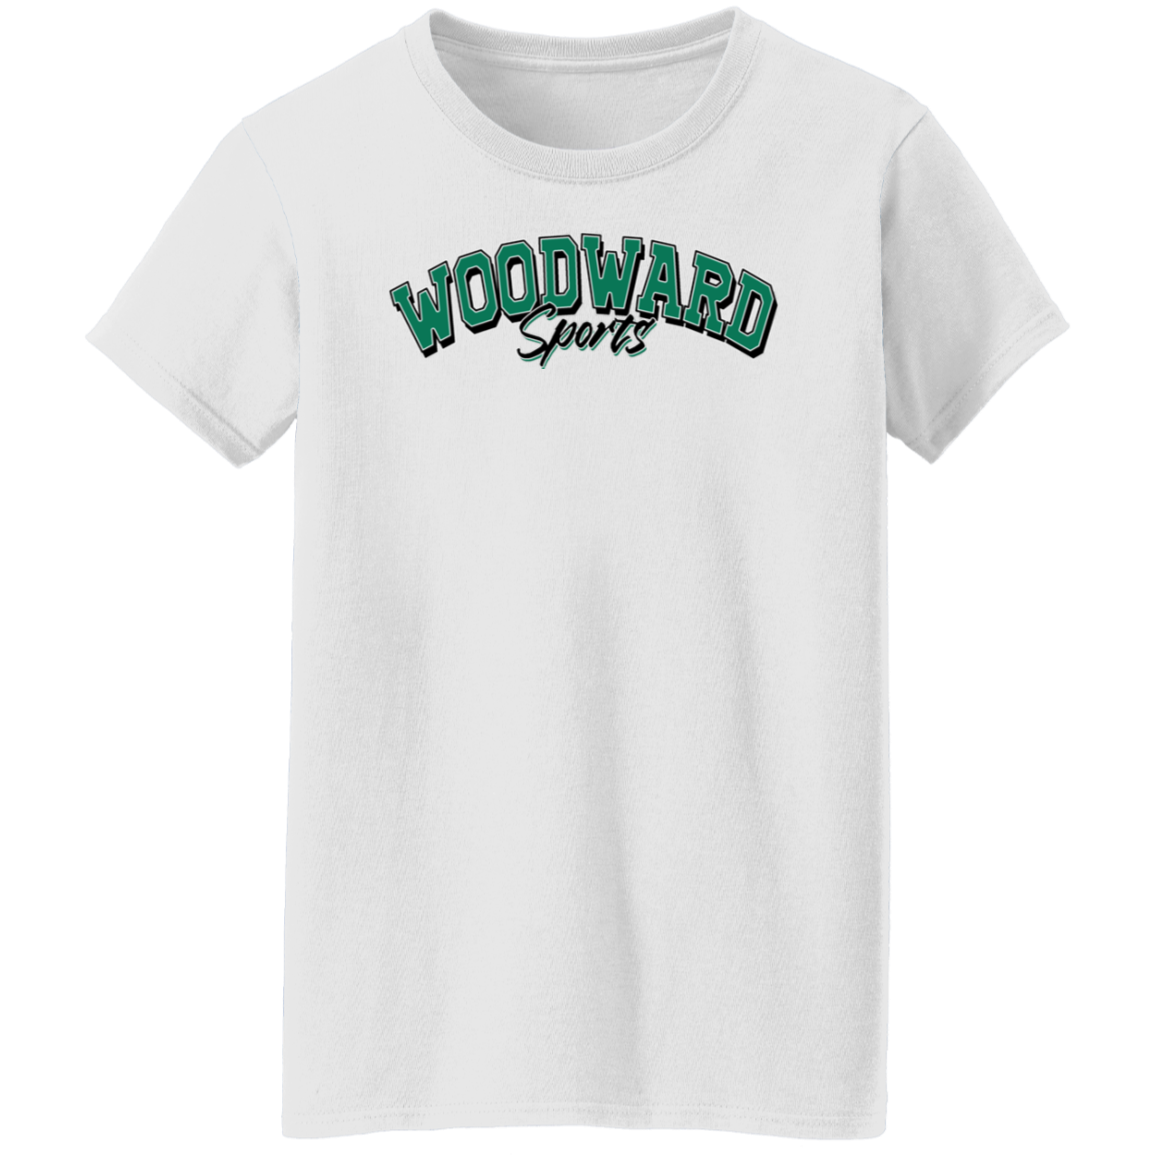 Woodward Sports Women's Tee